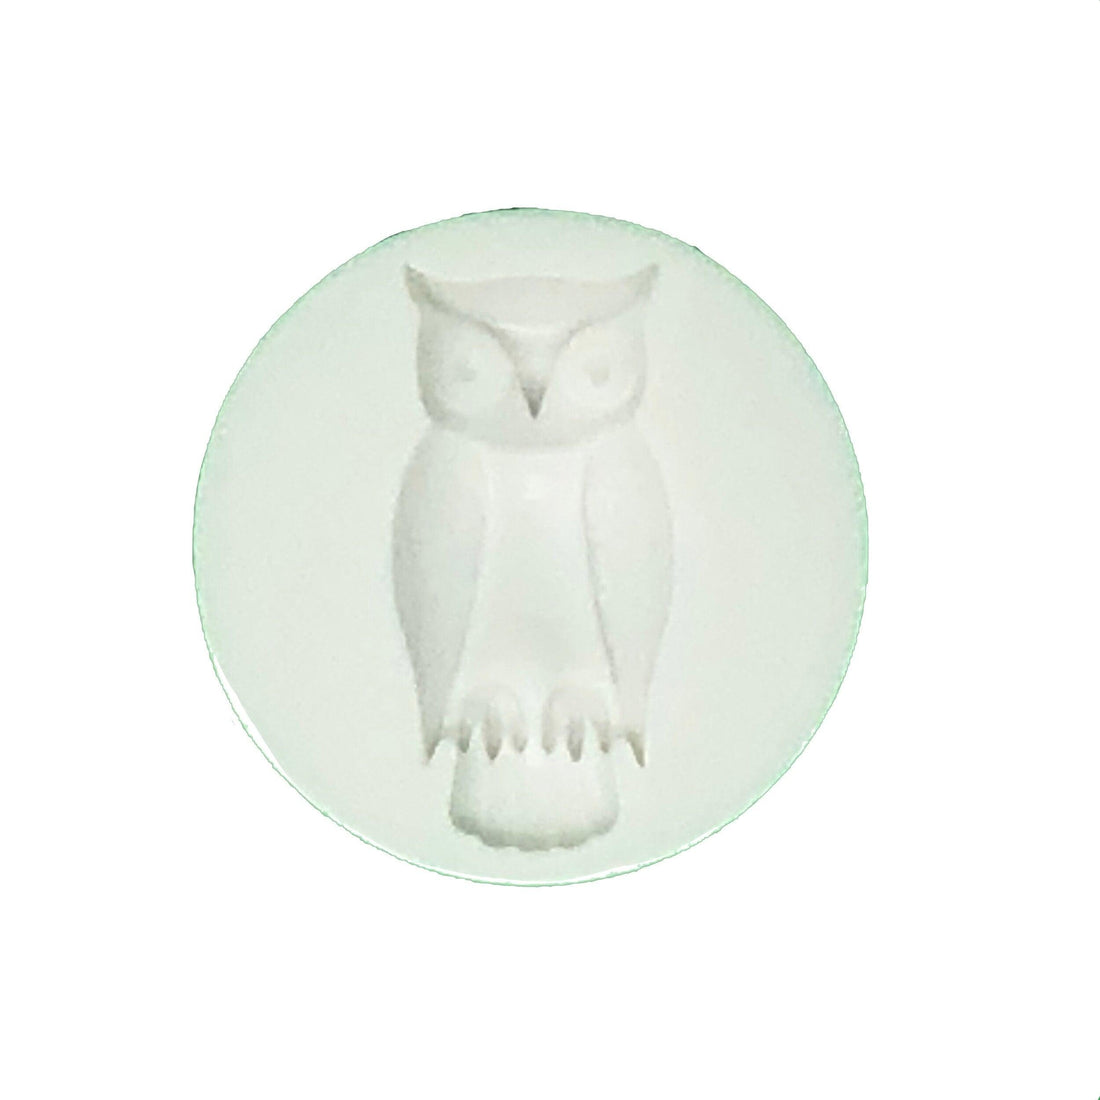 Owl Mold - Designer Cookies ® STUDIO